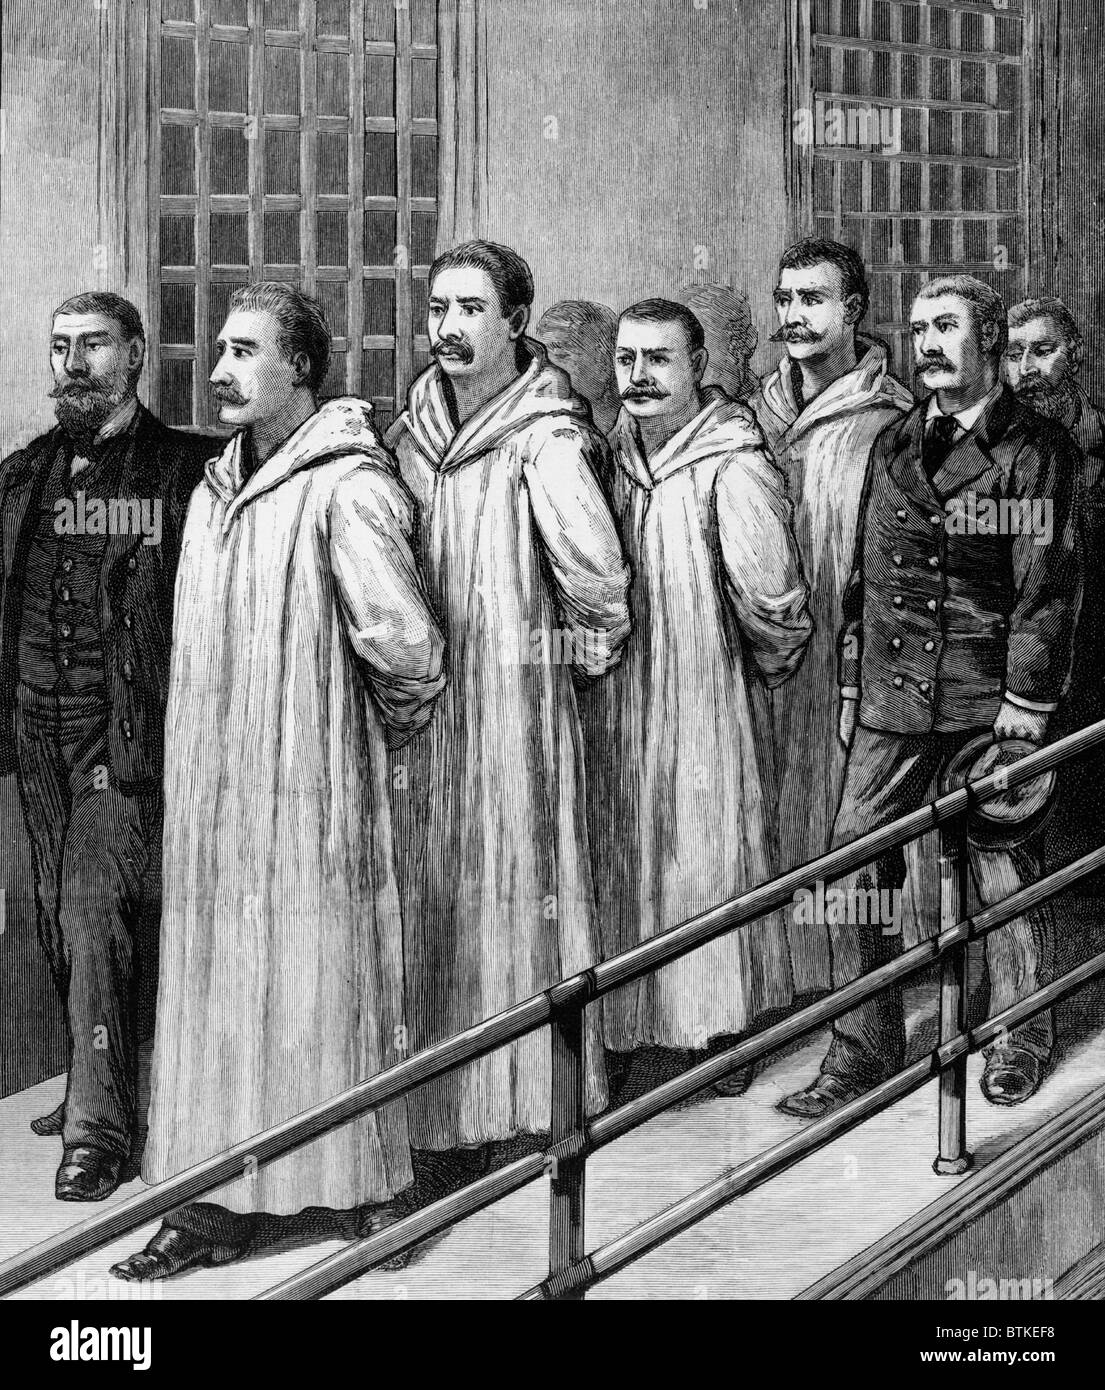 Vier Chicago Anarchisten verurteilt Mord an sieben Polizisten während der Haymarket Riot der 4. Mai 1887, auf dem Weg zu ihrer Hinrichtung durch Erhängen im Cook County Jail, November 1887. Stockfoto